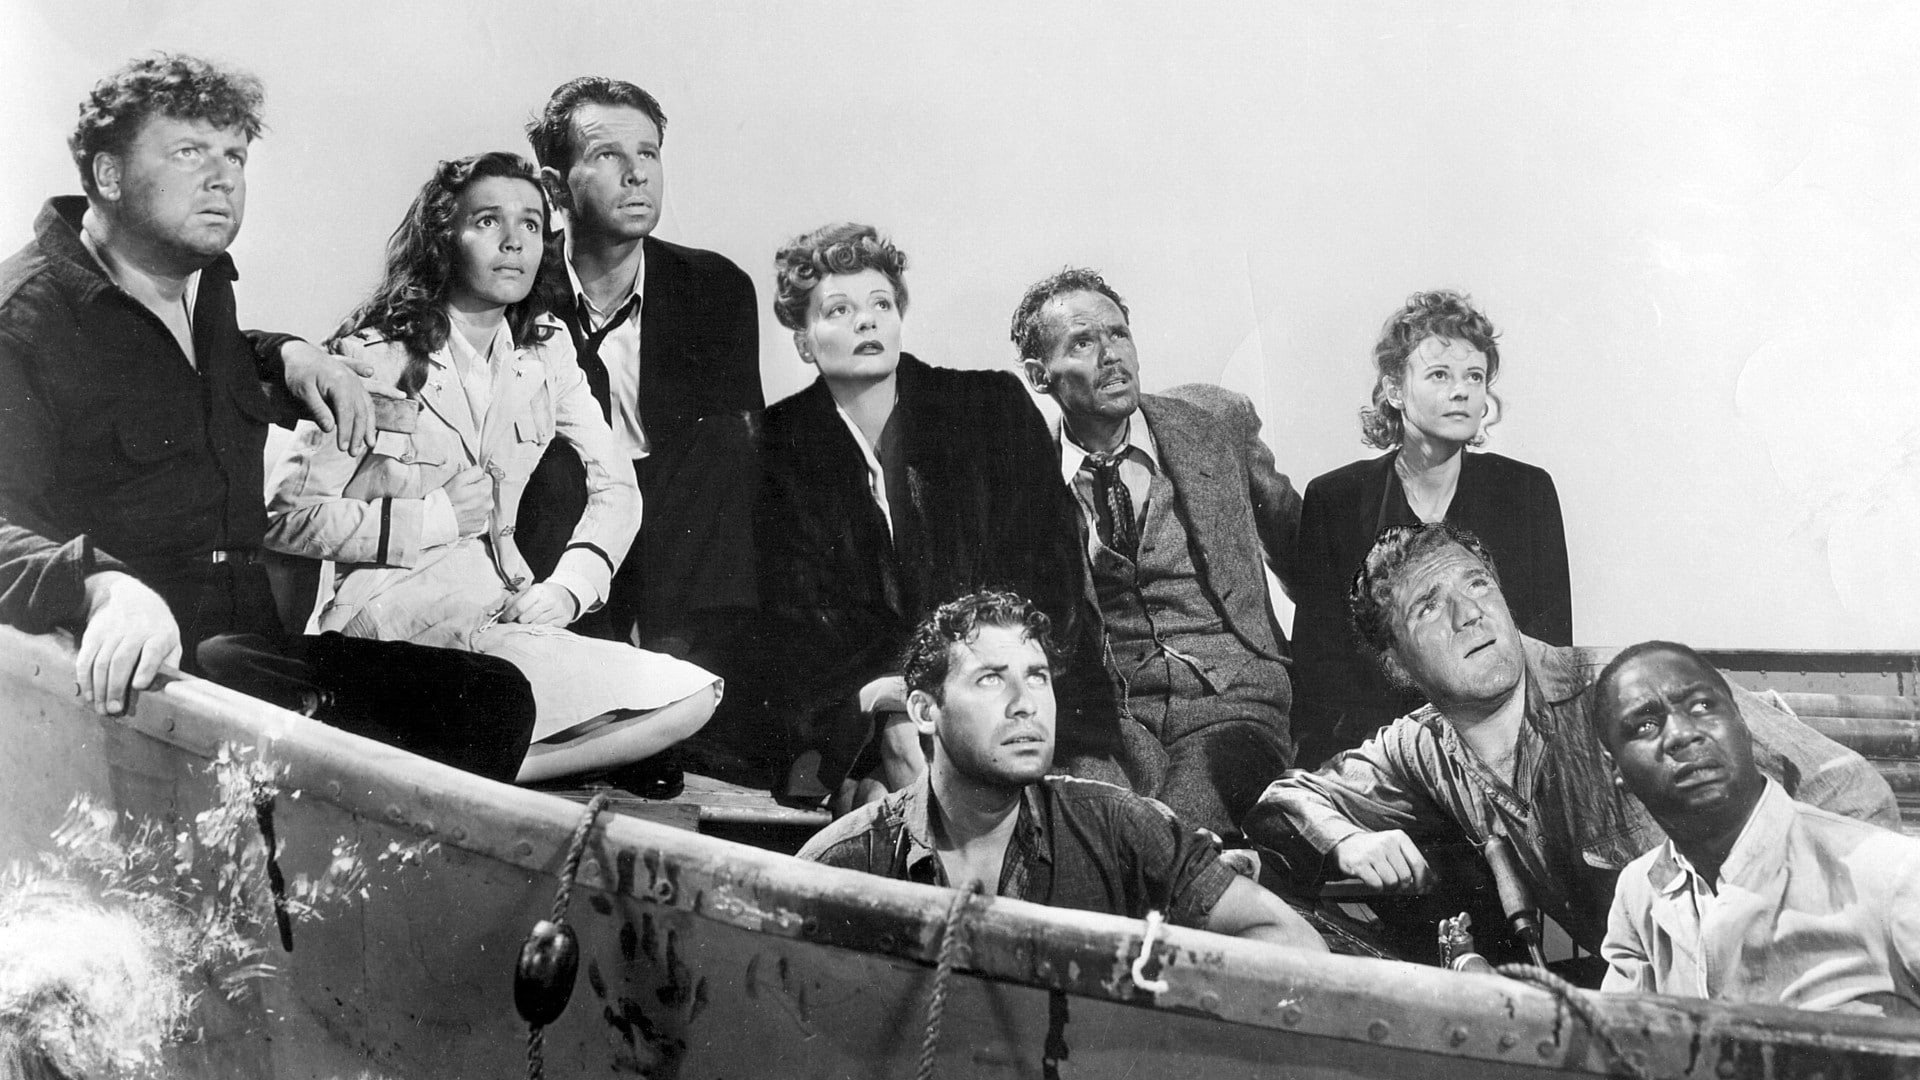 Tous les passagers du bateau en mer dans Lifeboat d'Alfred Hitchcock.